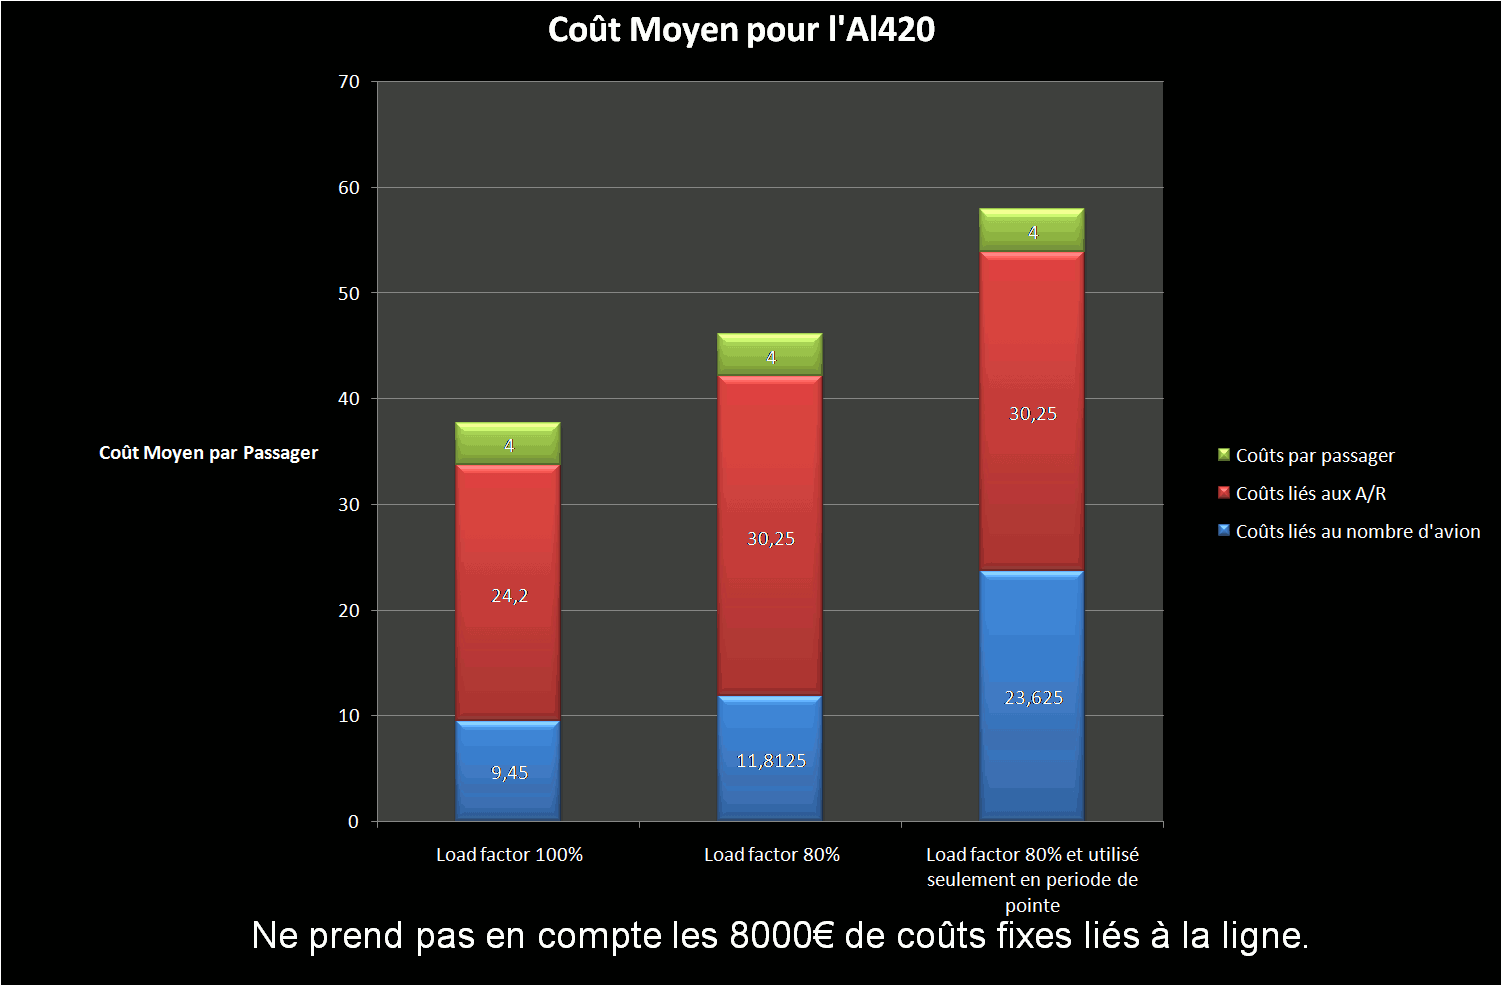 average cost